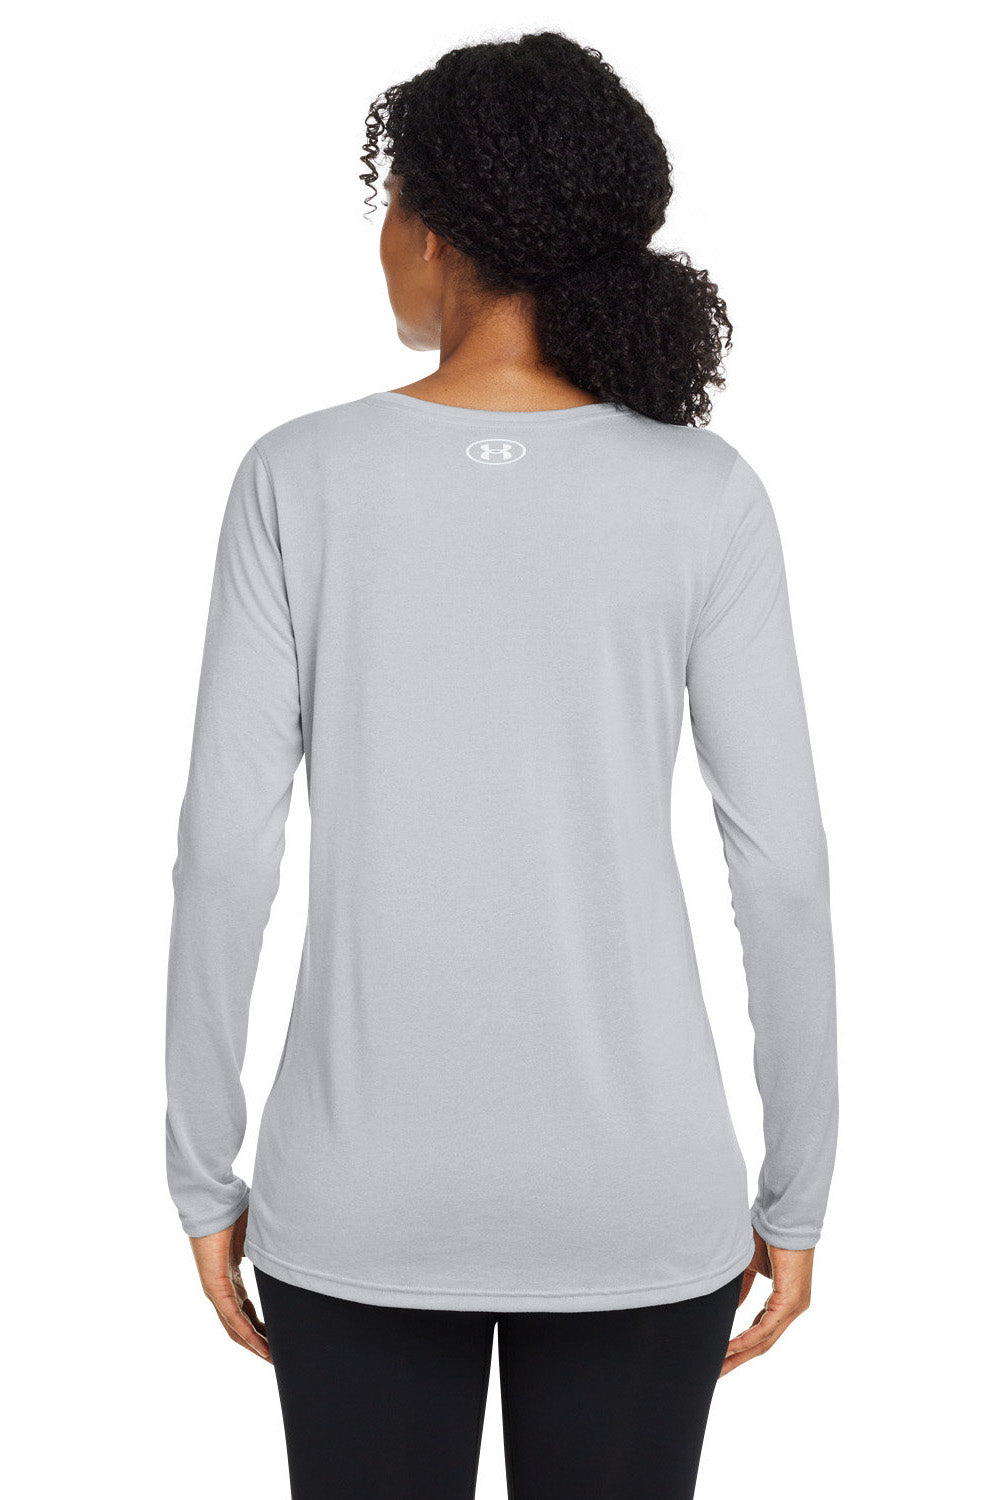 Under Armour 1376852 Womens Team Tech Moisture Wicking Long Sleeve Crewneck T-Shirt Mod Grey Model Back